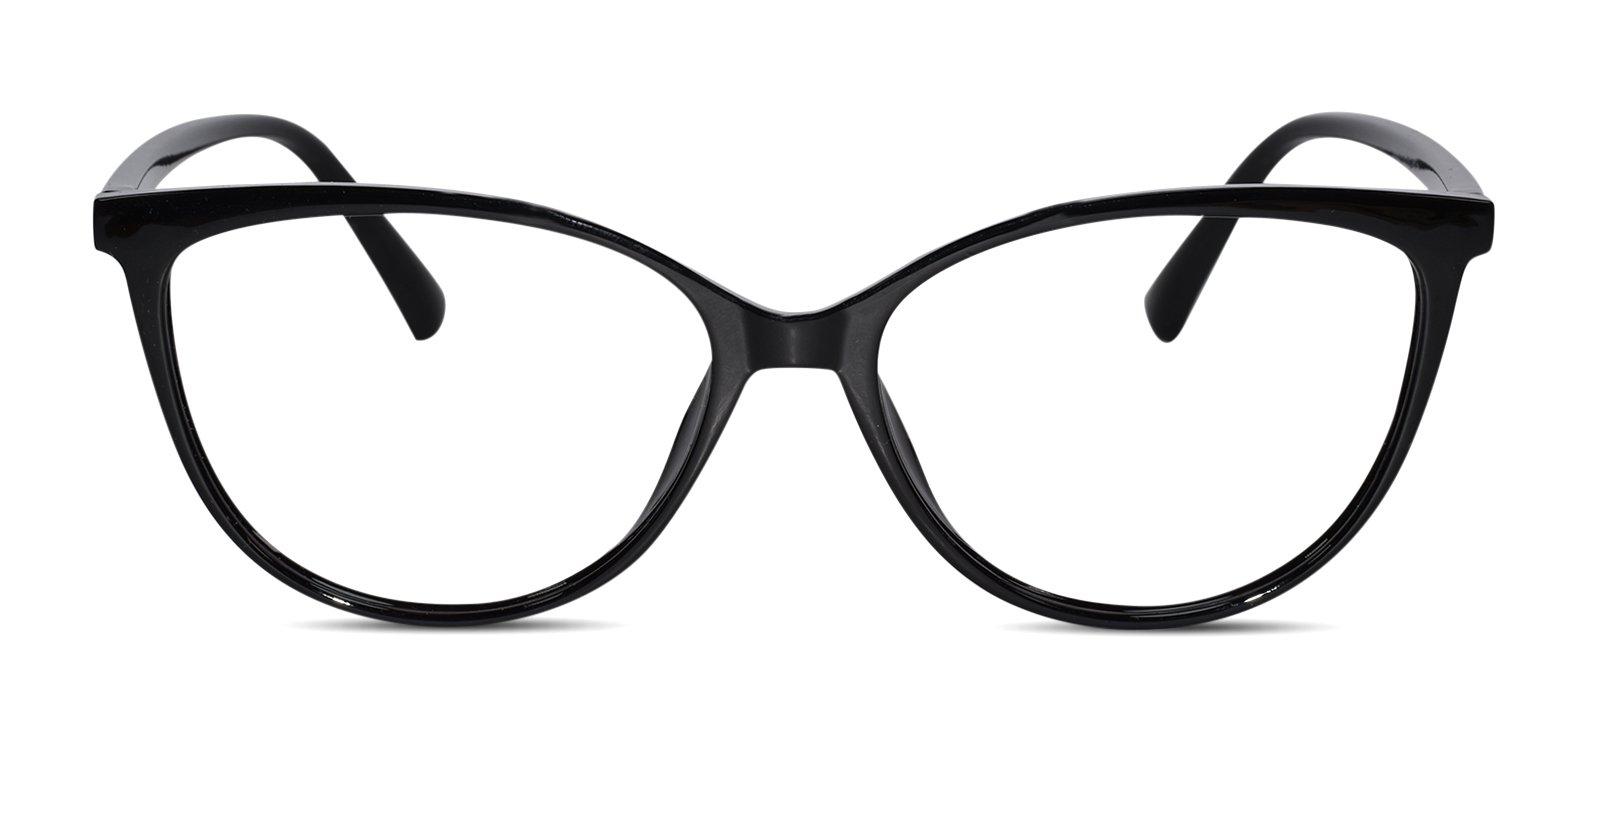 Glossy Black Full Rim Cateye Eyeglasses